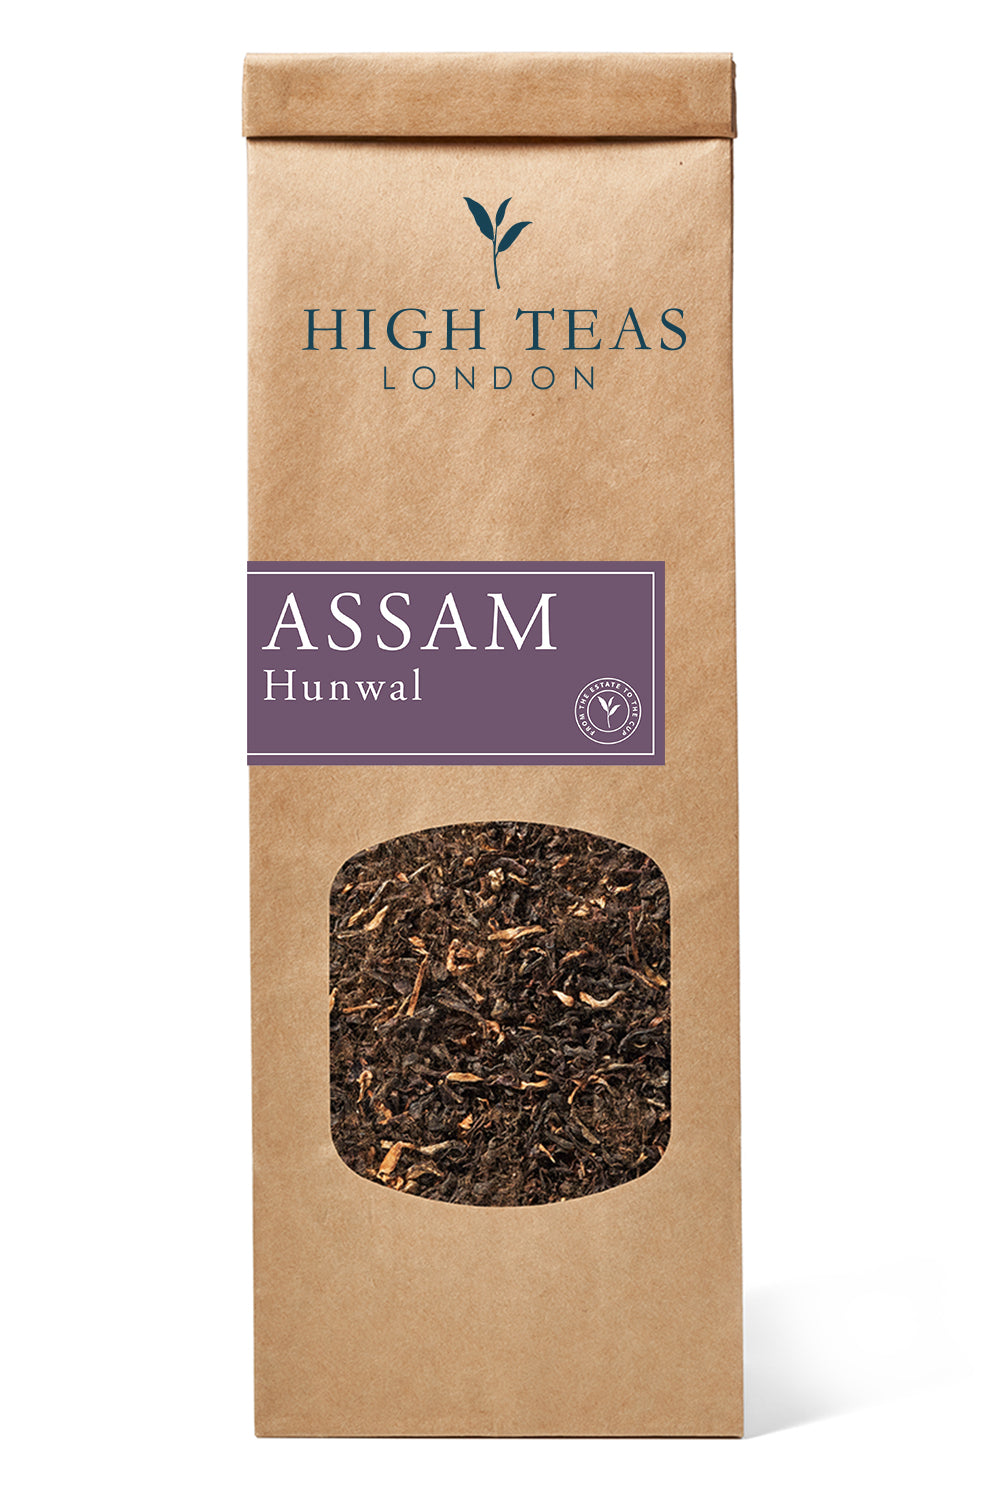 Assam Hunwal 2nd flush-50g-Loose Leaf Tea-High Teas